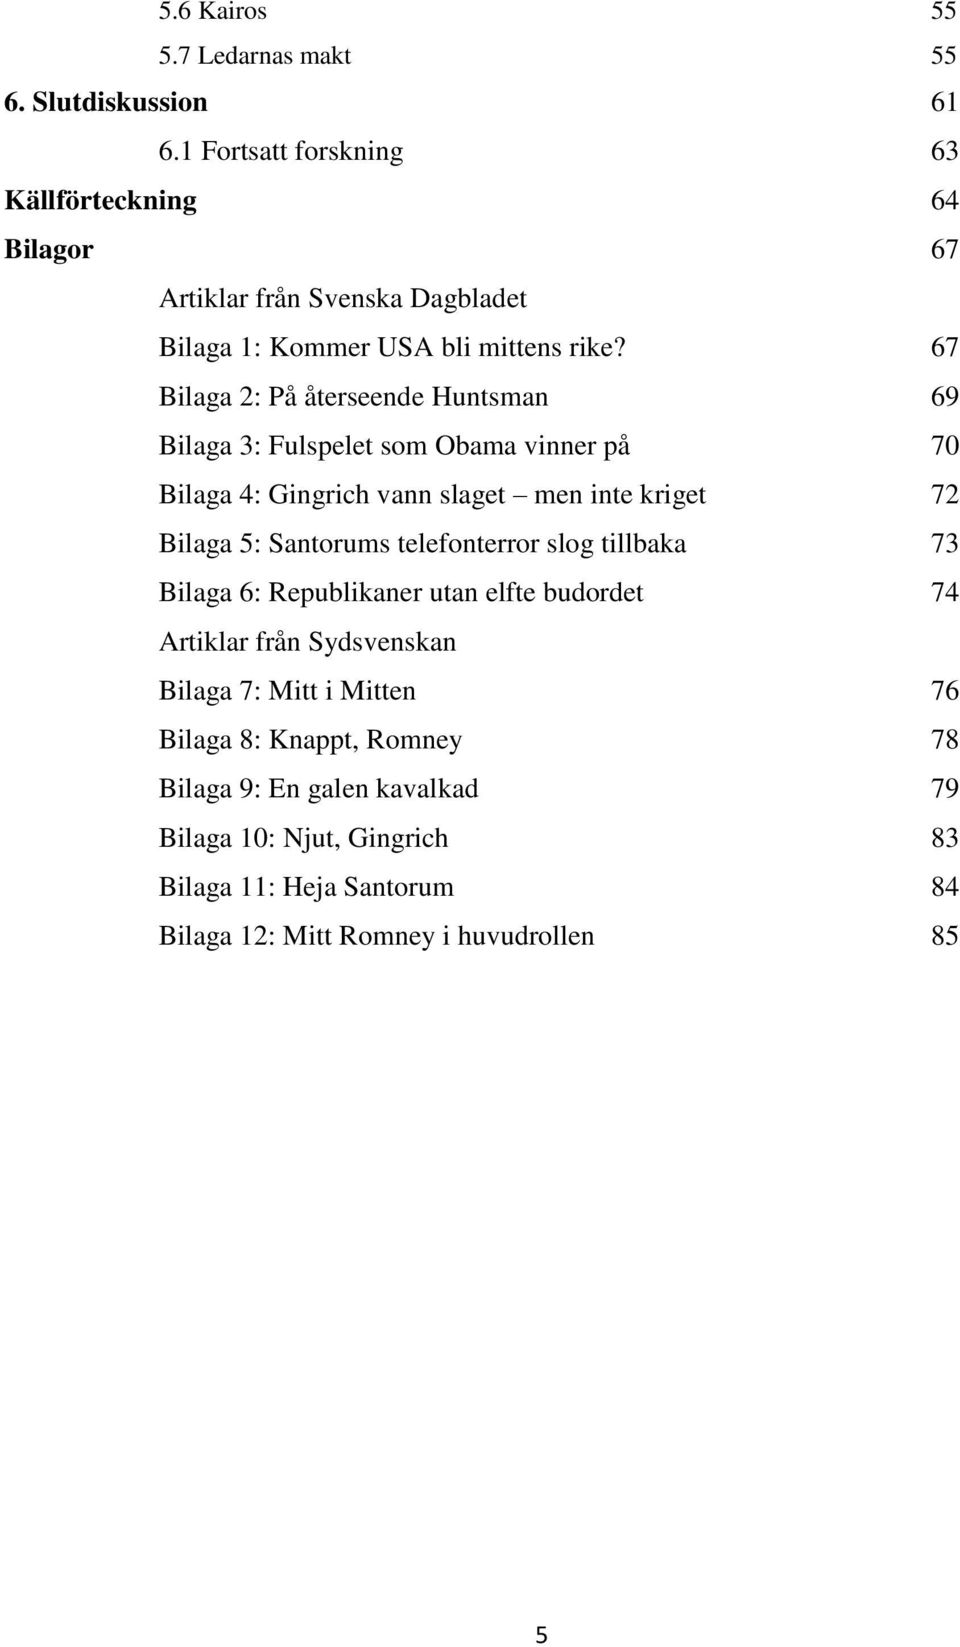 67 Bilaga 2: På återseende Huntsman 69 Bilaga 3: Fulspelet som Obama vinner på 70 Bilaga 4: Gingrich vann slaget men inte kriget 72 Bilaga 5: Santorums